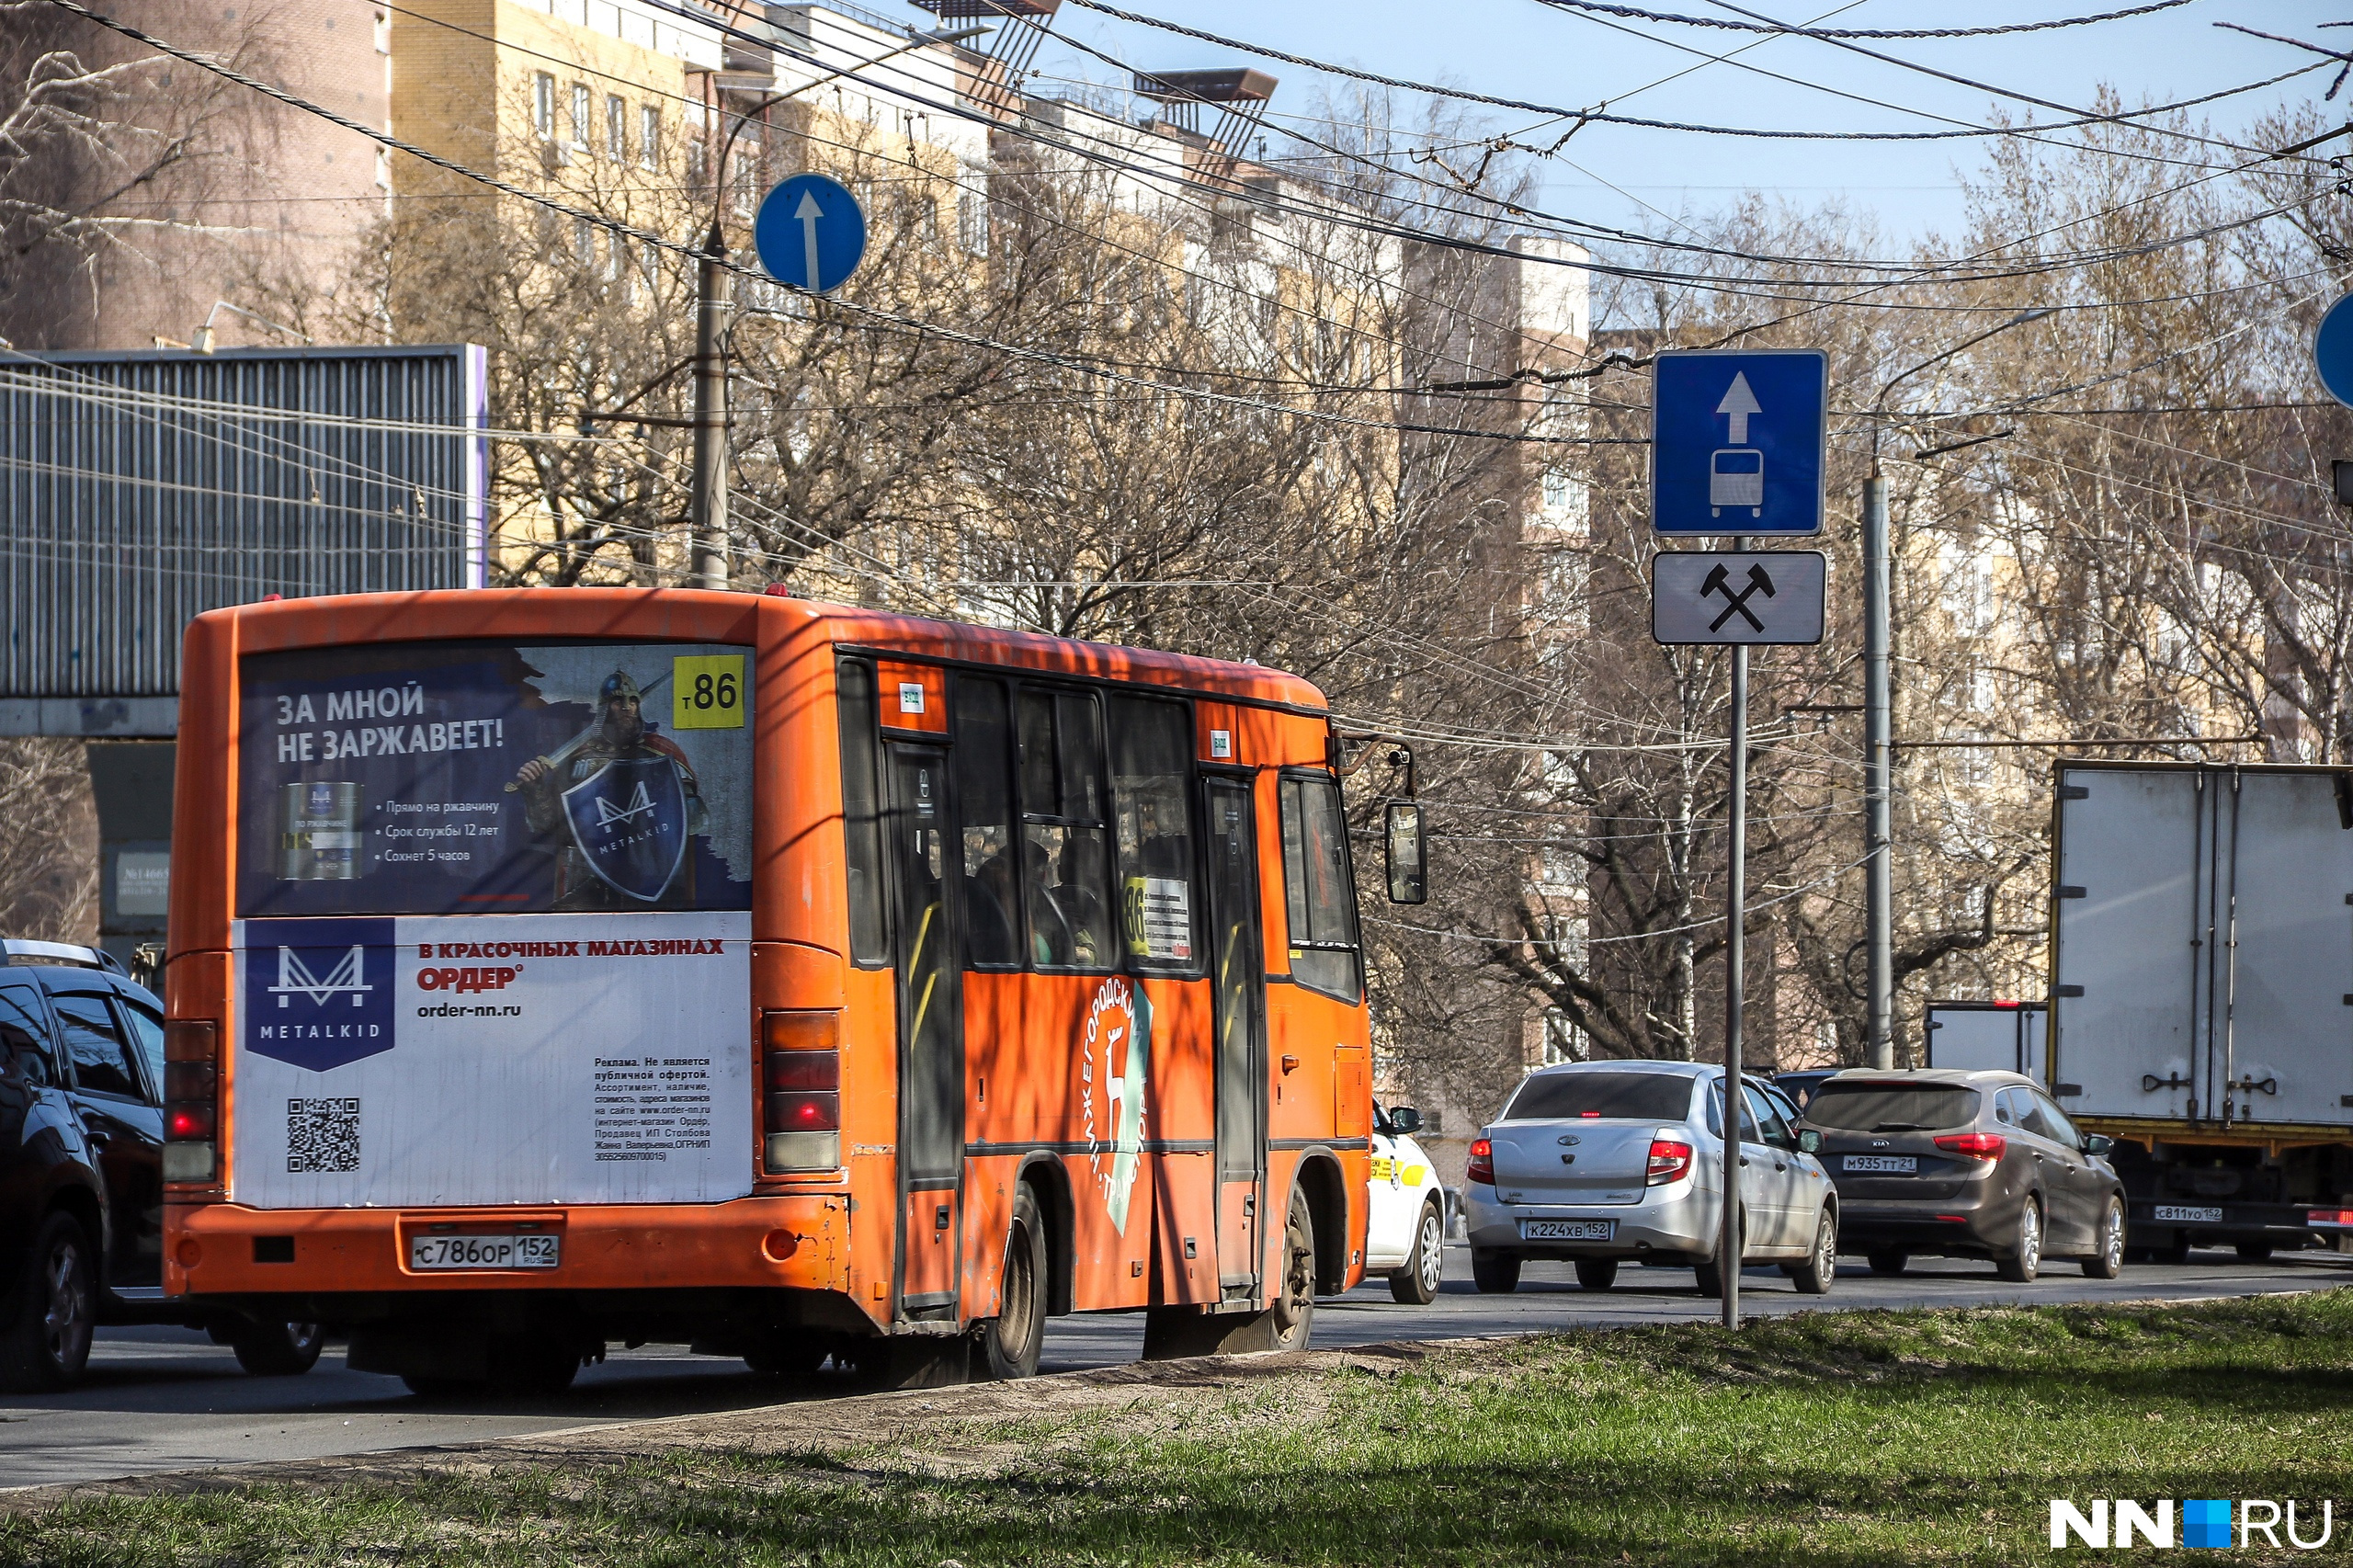 Участок проспекта Ленина в Нижнем перекроют из-за ремонта. Как будут ходить автобусы